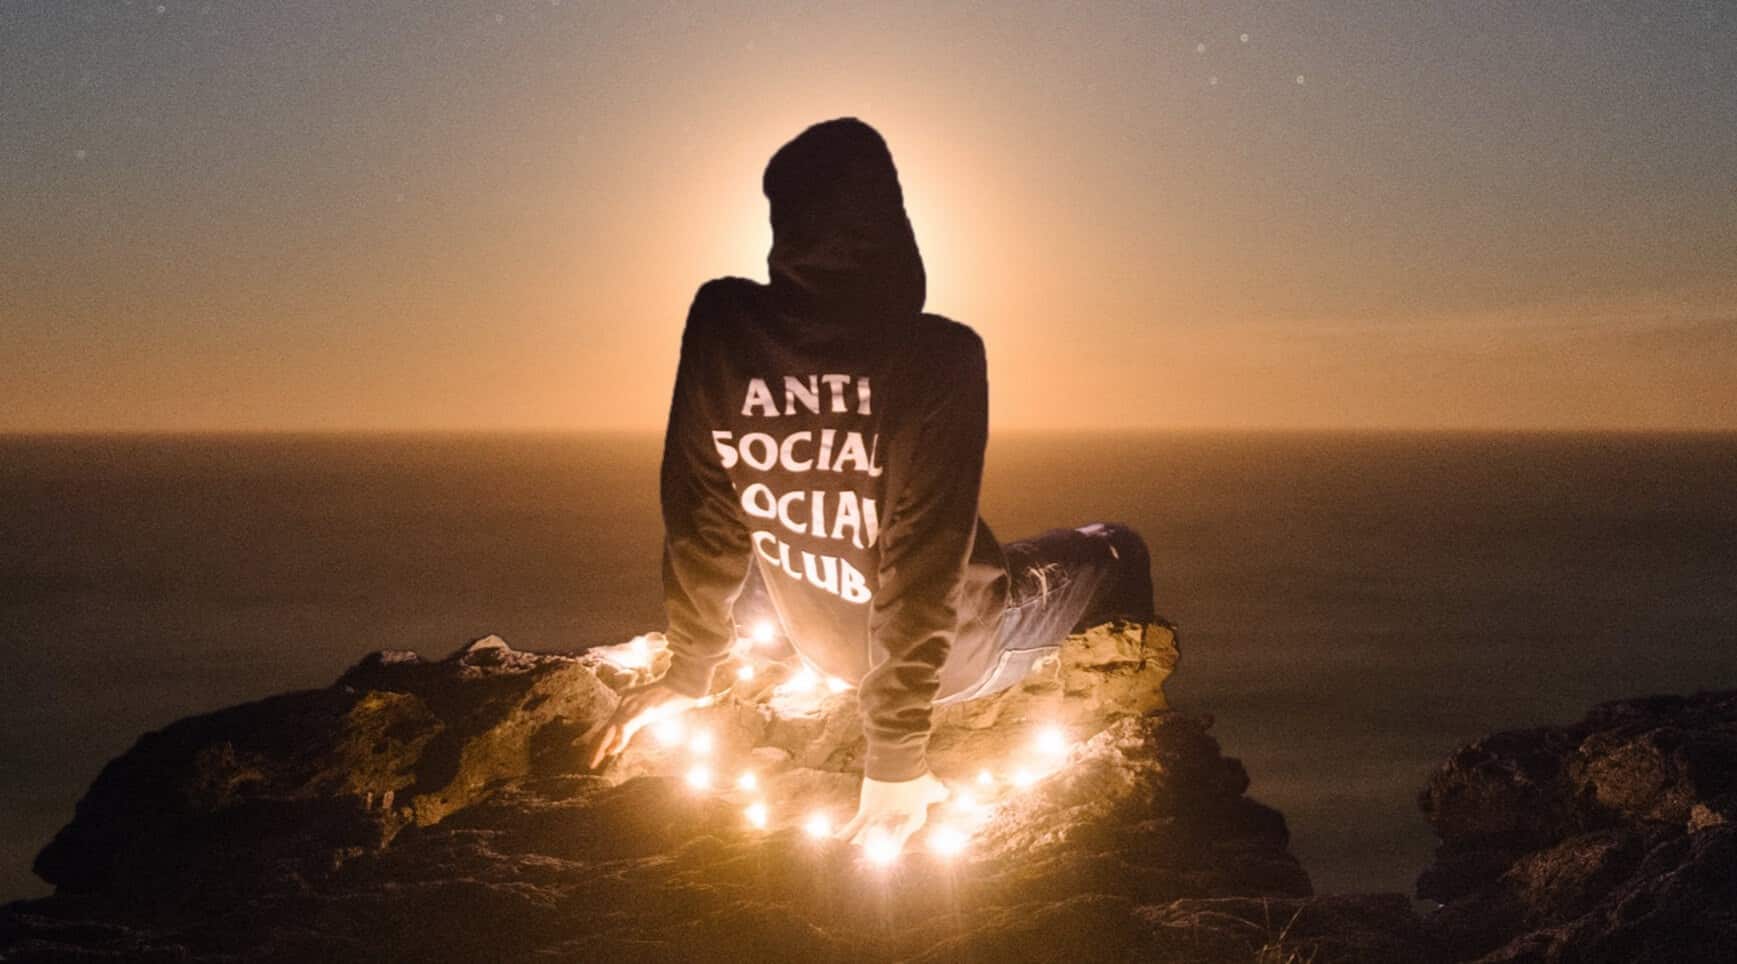 Anti Social Social Club là gì? - Thương hiệu thời trang nổi tiếng được đông đảo giới trẻ yêu thích